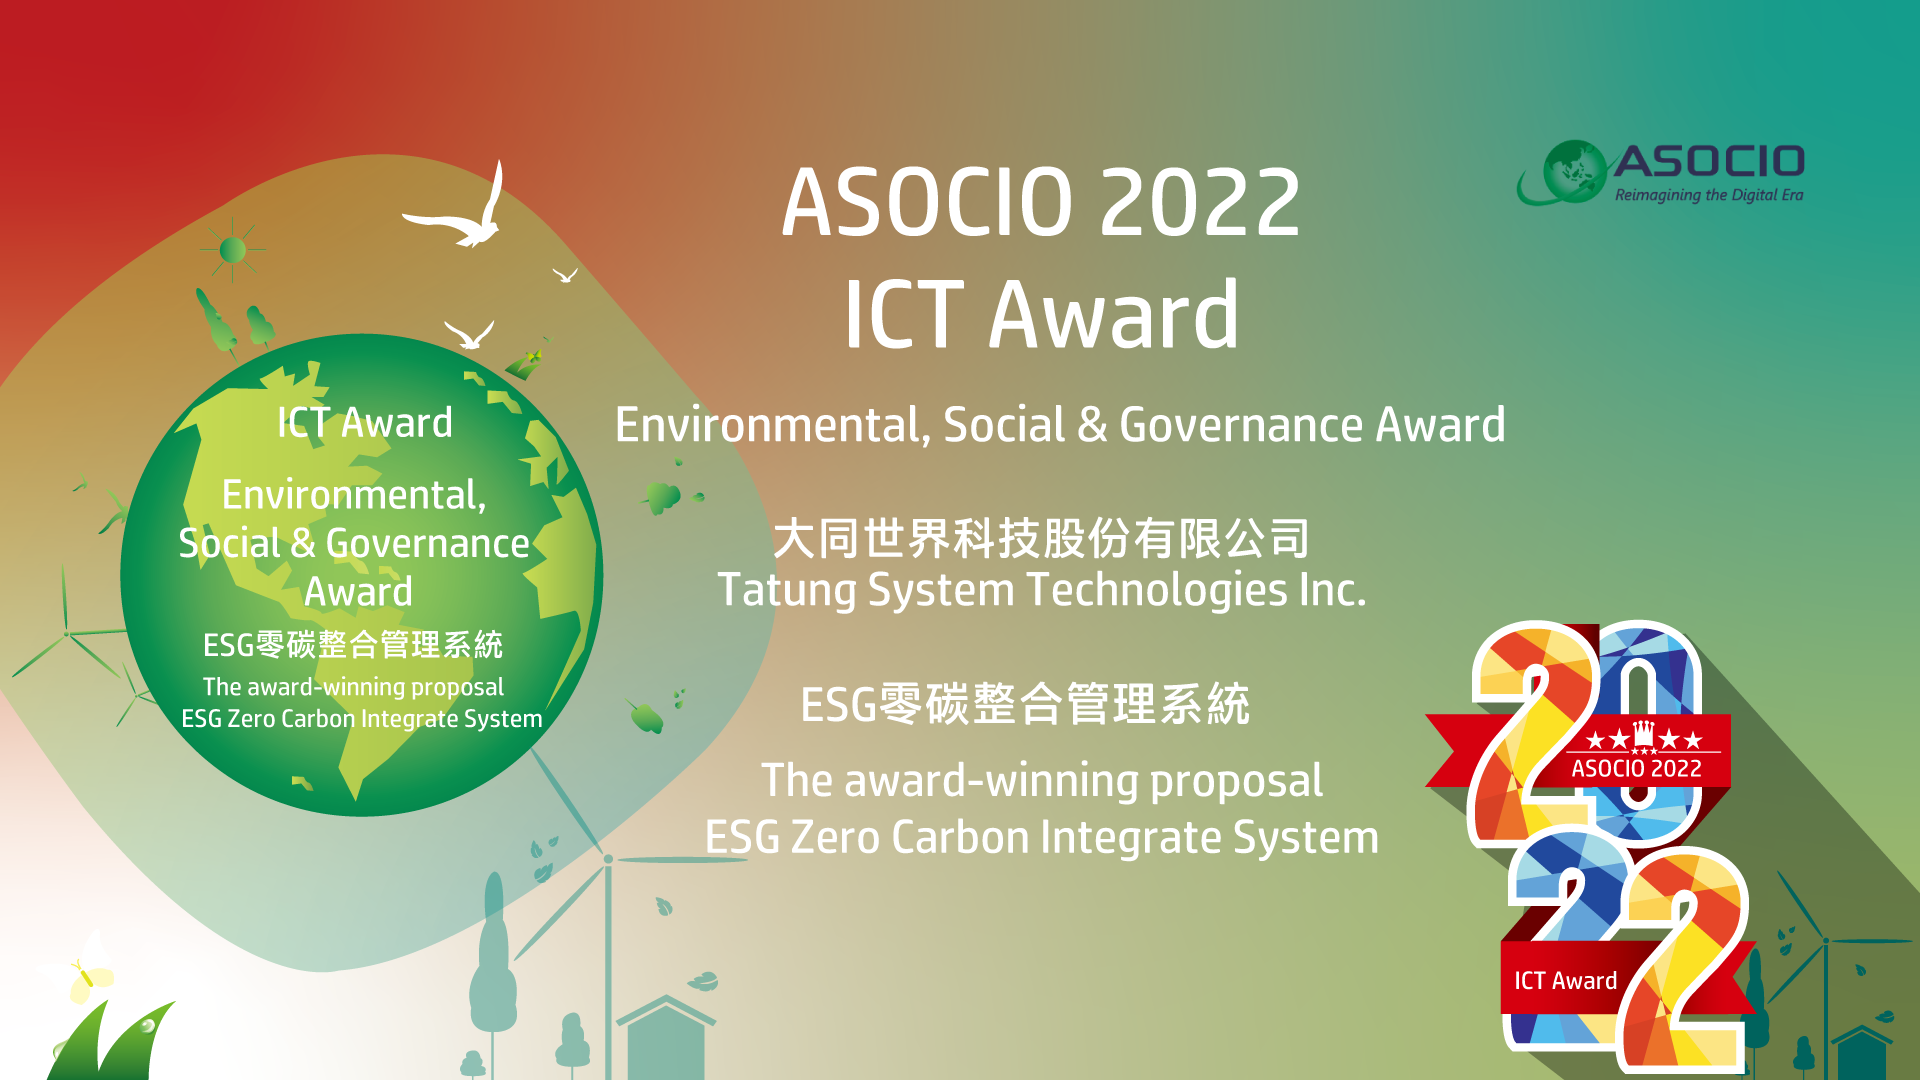 2022 ASOCIO Tech Excellence Award 「ESG零碳整合管理系統」榮獲 ASOCIO 2022 ICT Award - ESG Award 肯定